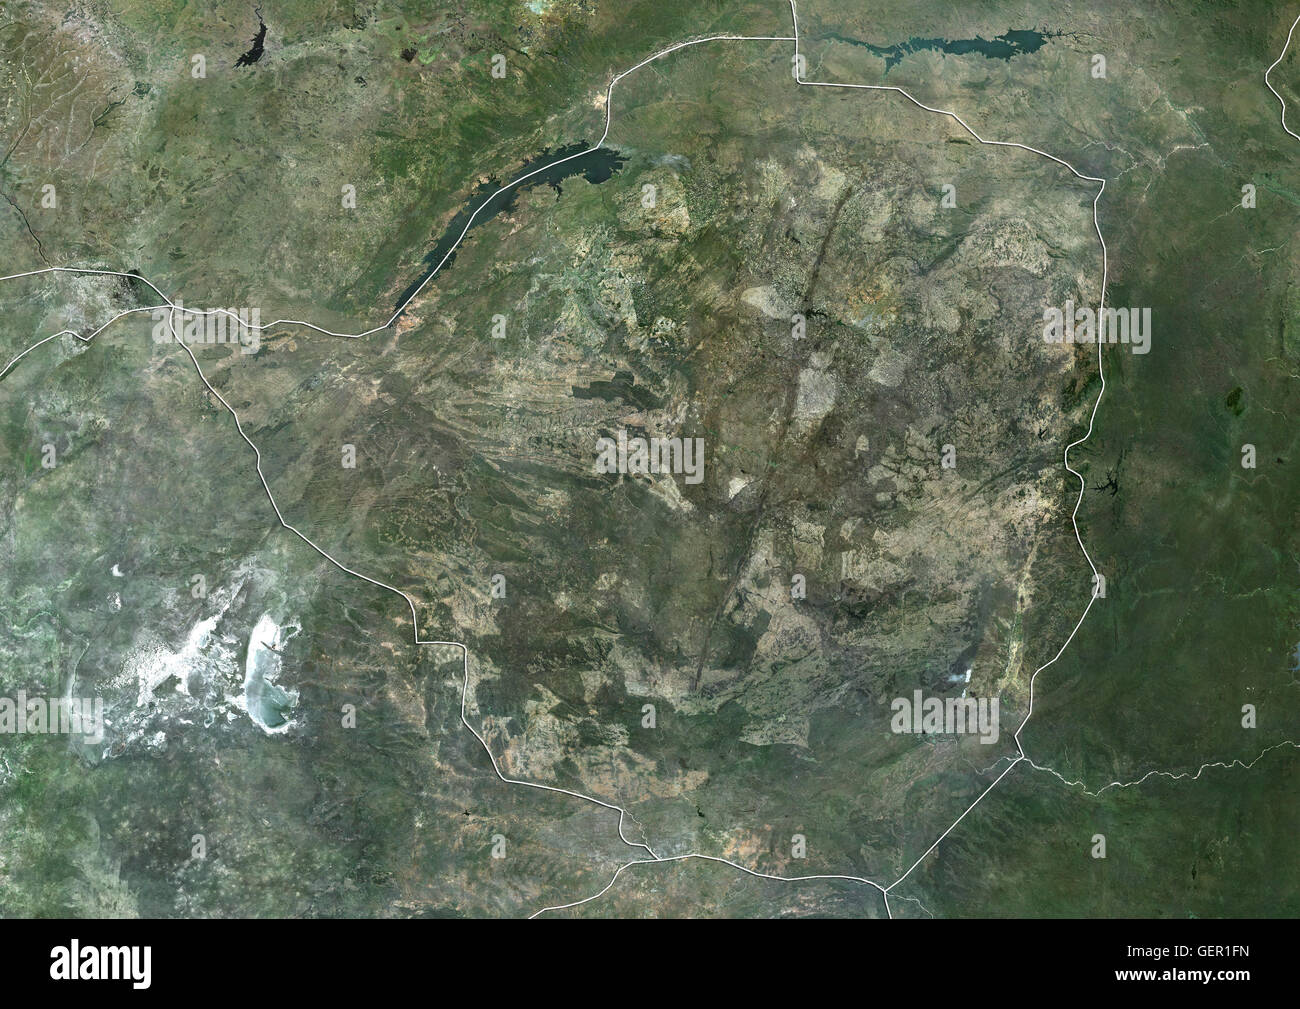 Satellitenansicht von Simbabwe (mit Ländergrenzen). Dieses Bild wurde aus Daten von Landsat-Satelliten erworben erstellt. Stockfoto